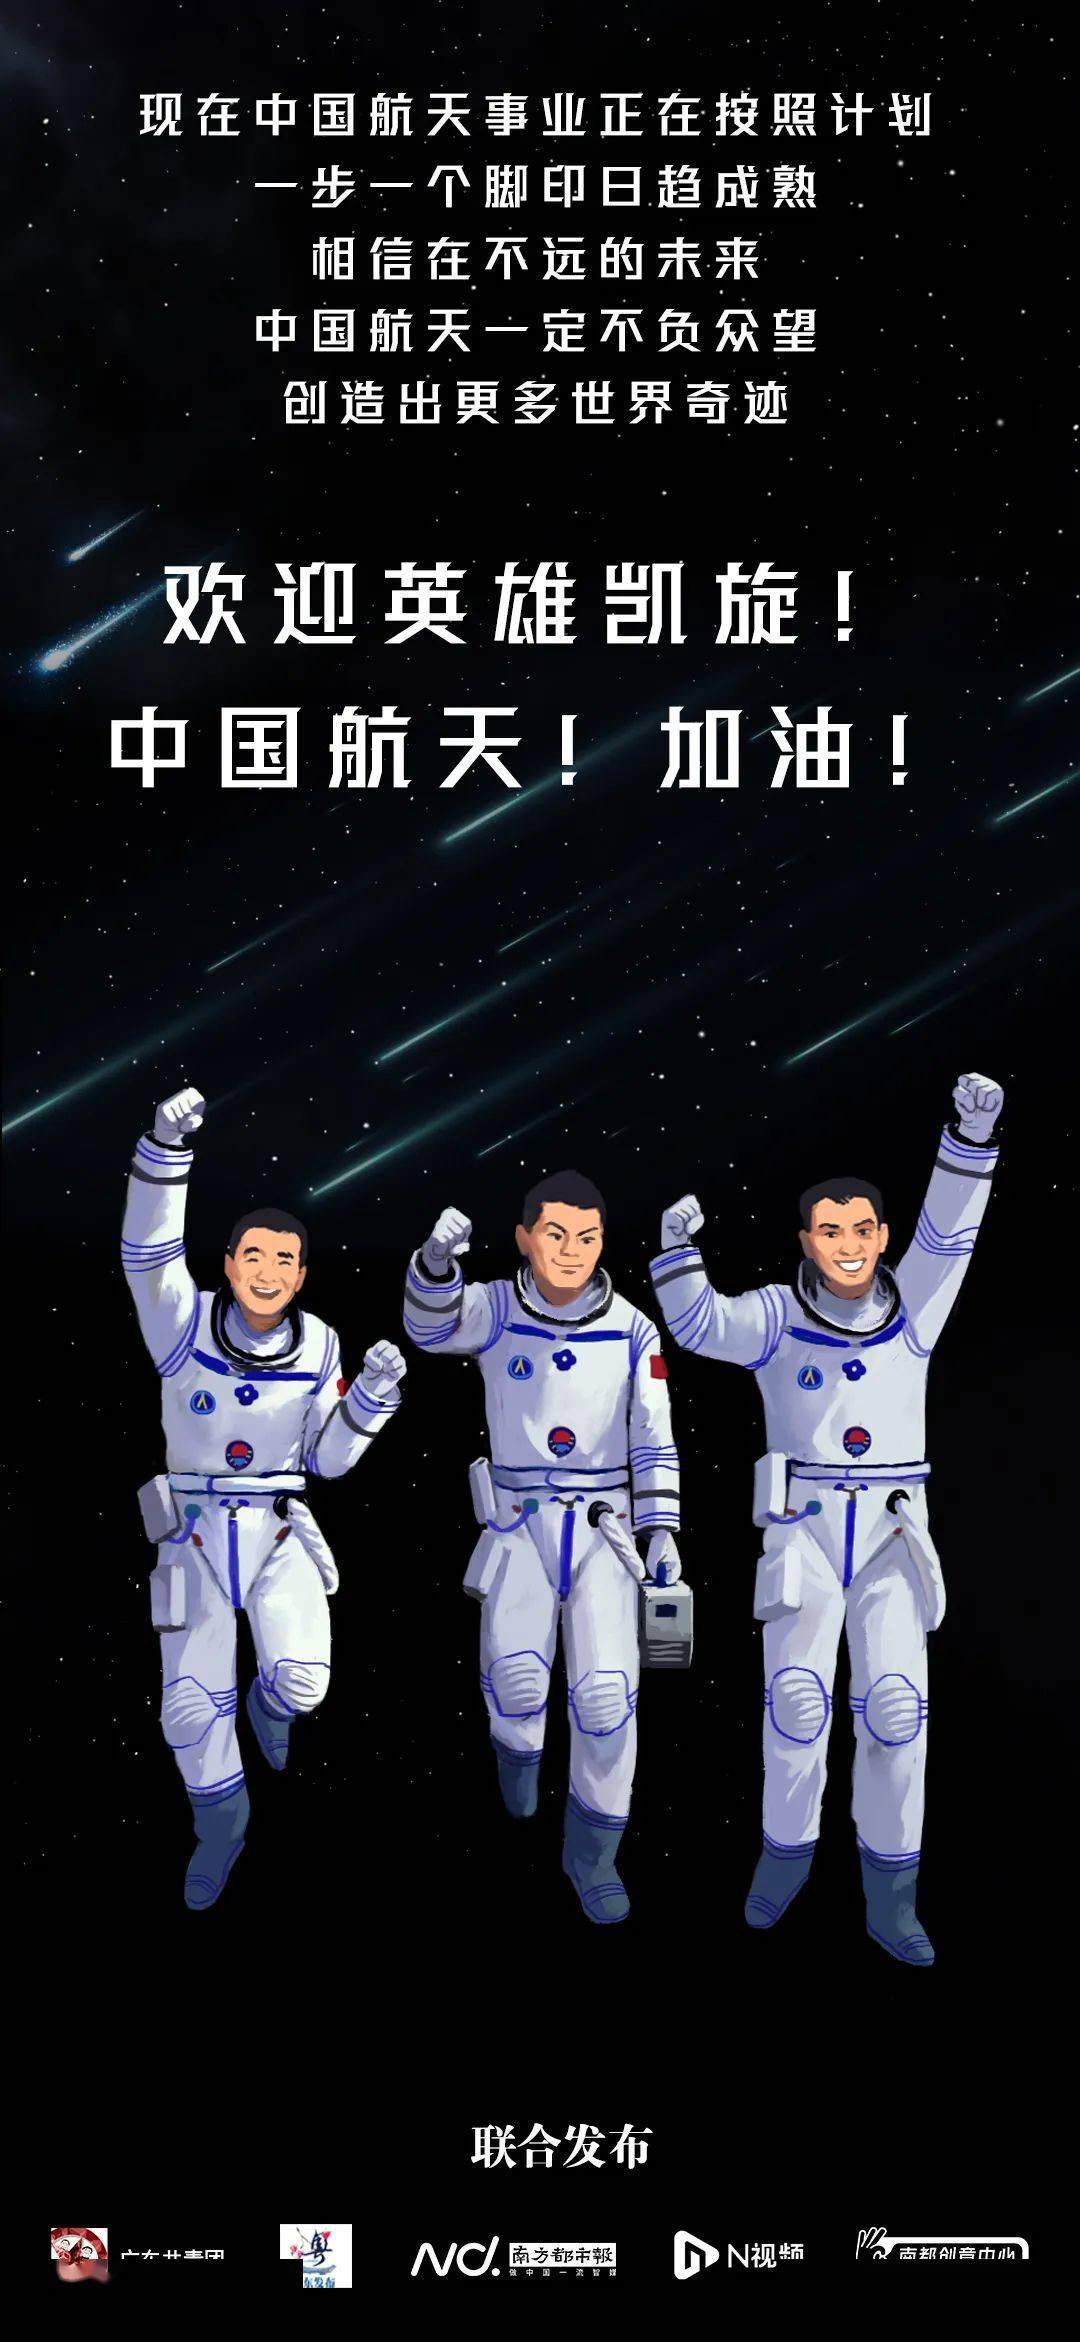 航天员 聂海胜 刘伯明 汤洪波 欢迎回家 今天还是 航天员刘伯明的生日